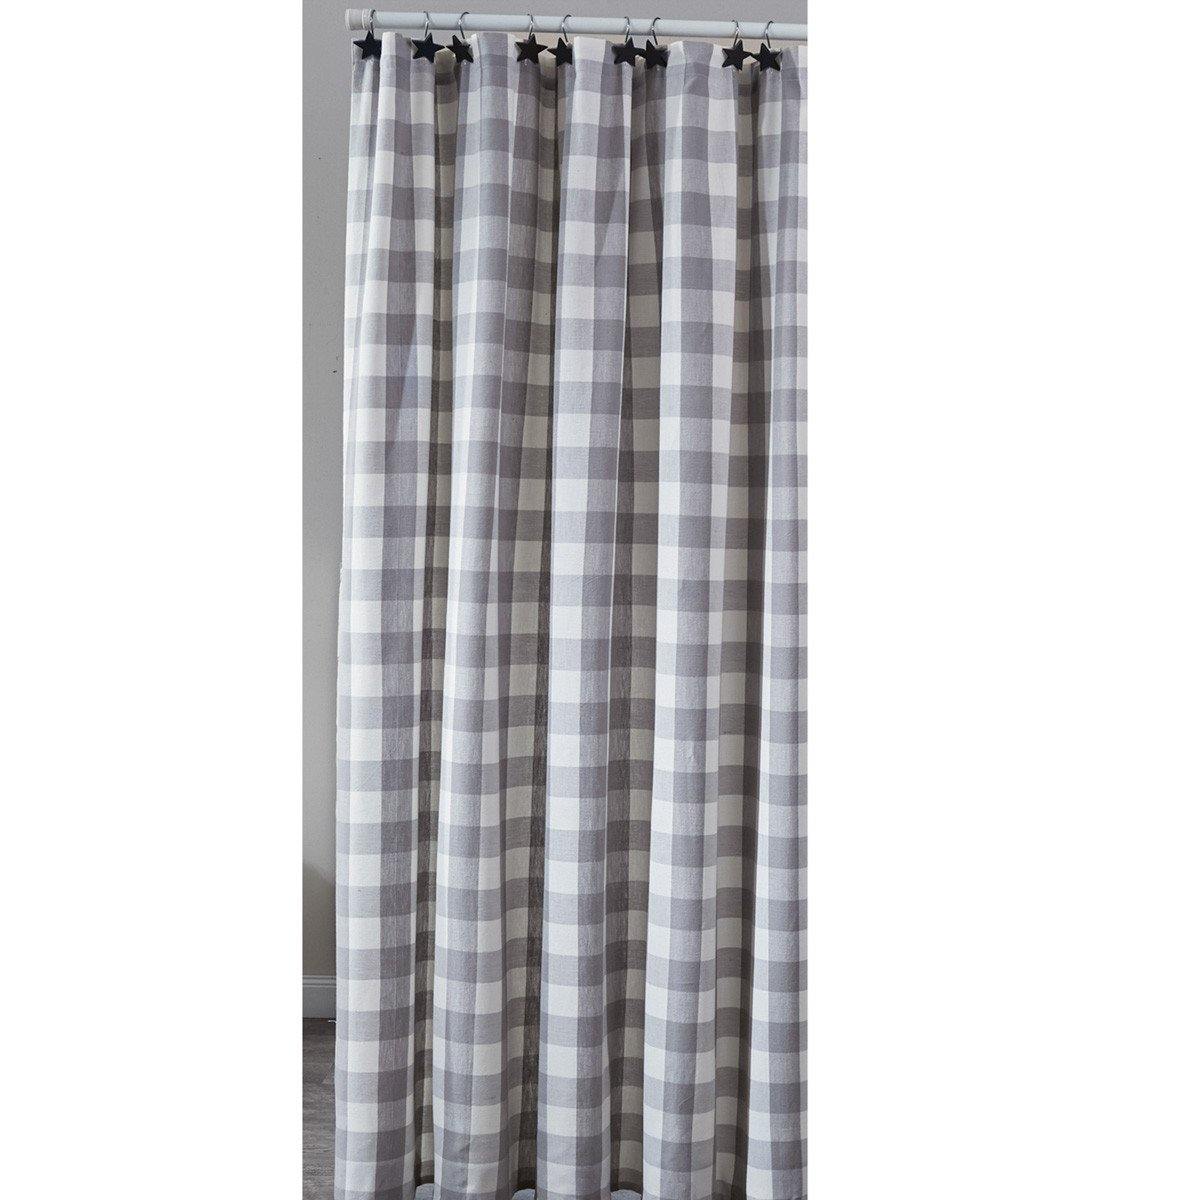 Wicklow Dove Gray, Winter White Check Fabric Shower Curtain 72